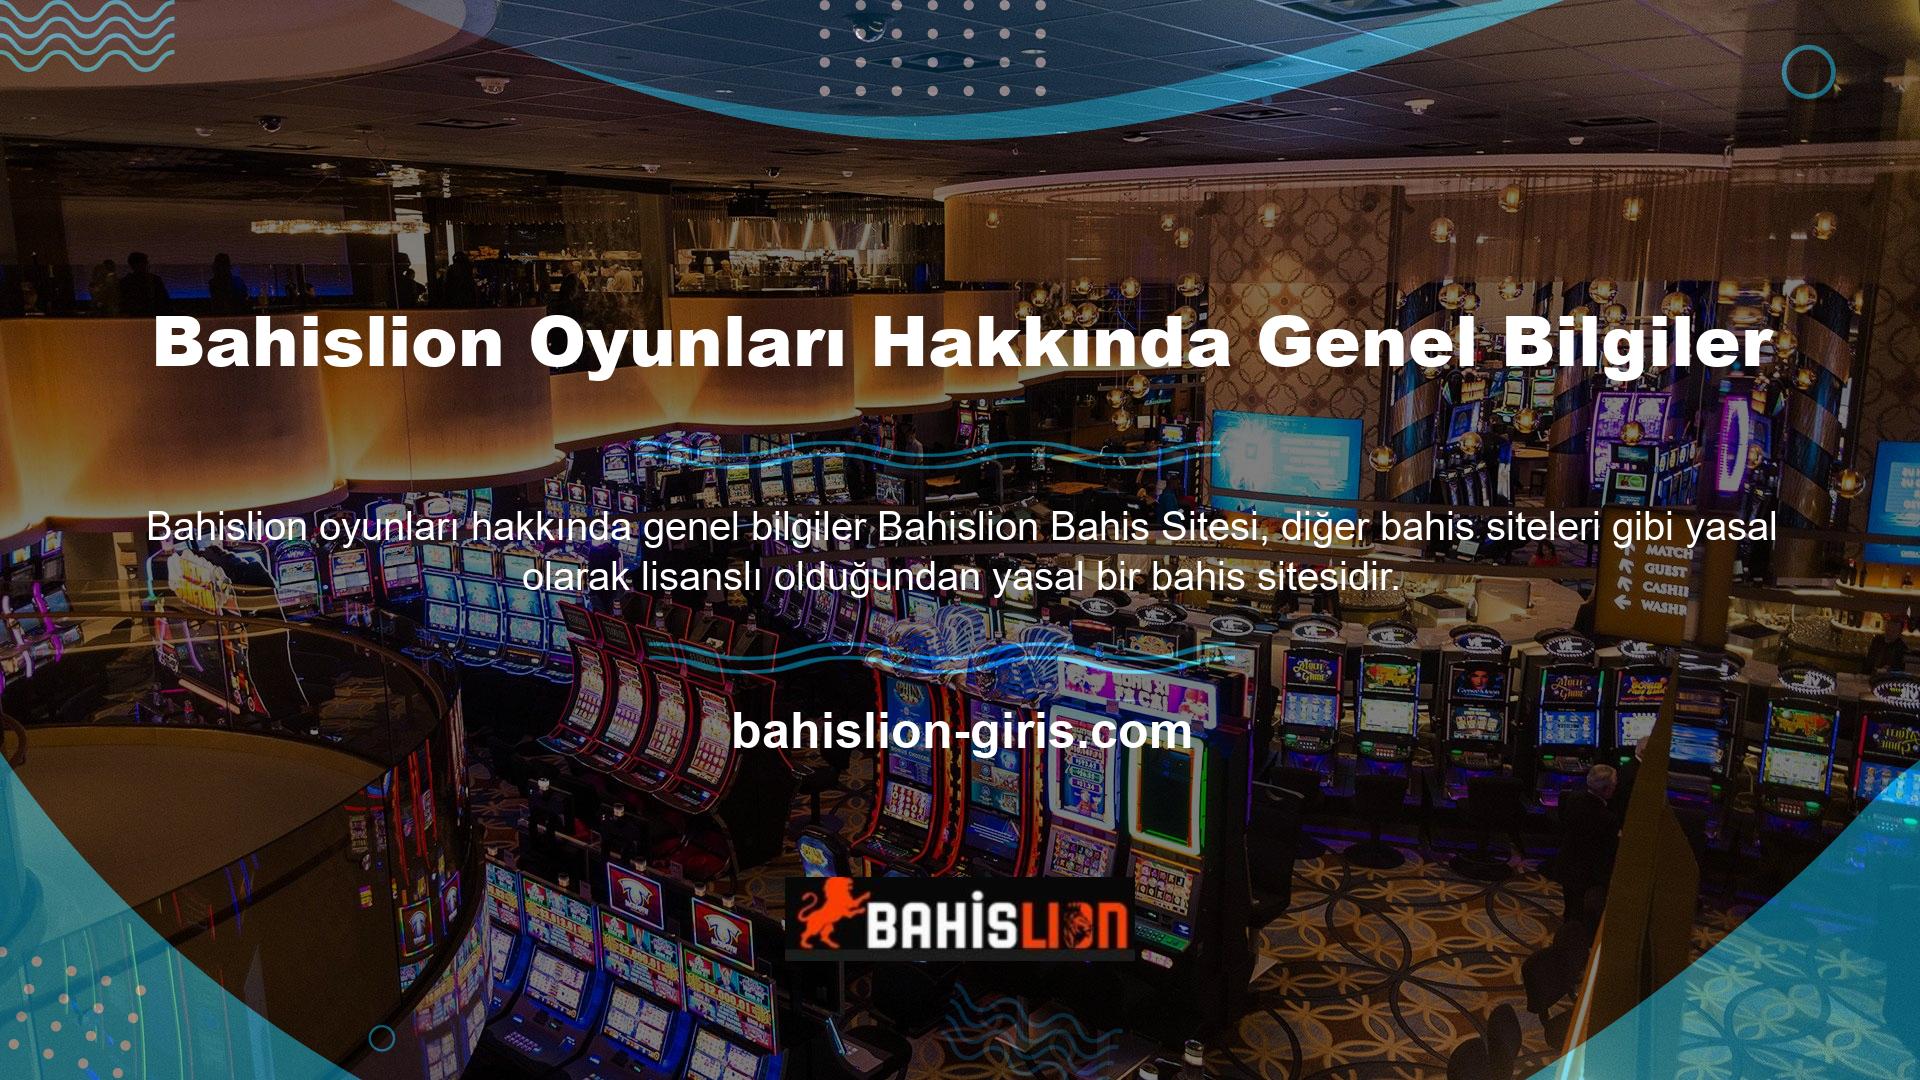 Ancak Bahislion casino sitesine kaydolduğundan beri yasa dışı faaliyetlere karışmış ve vergi ve diğer masraflara maruz kalmıştır